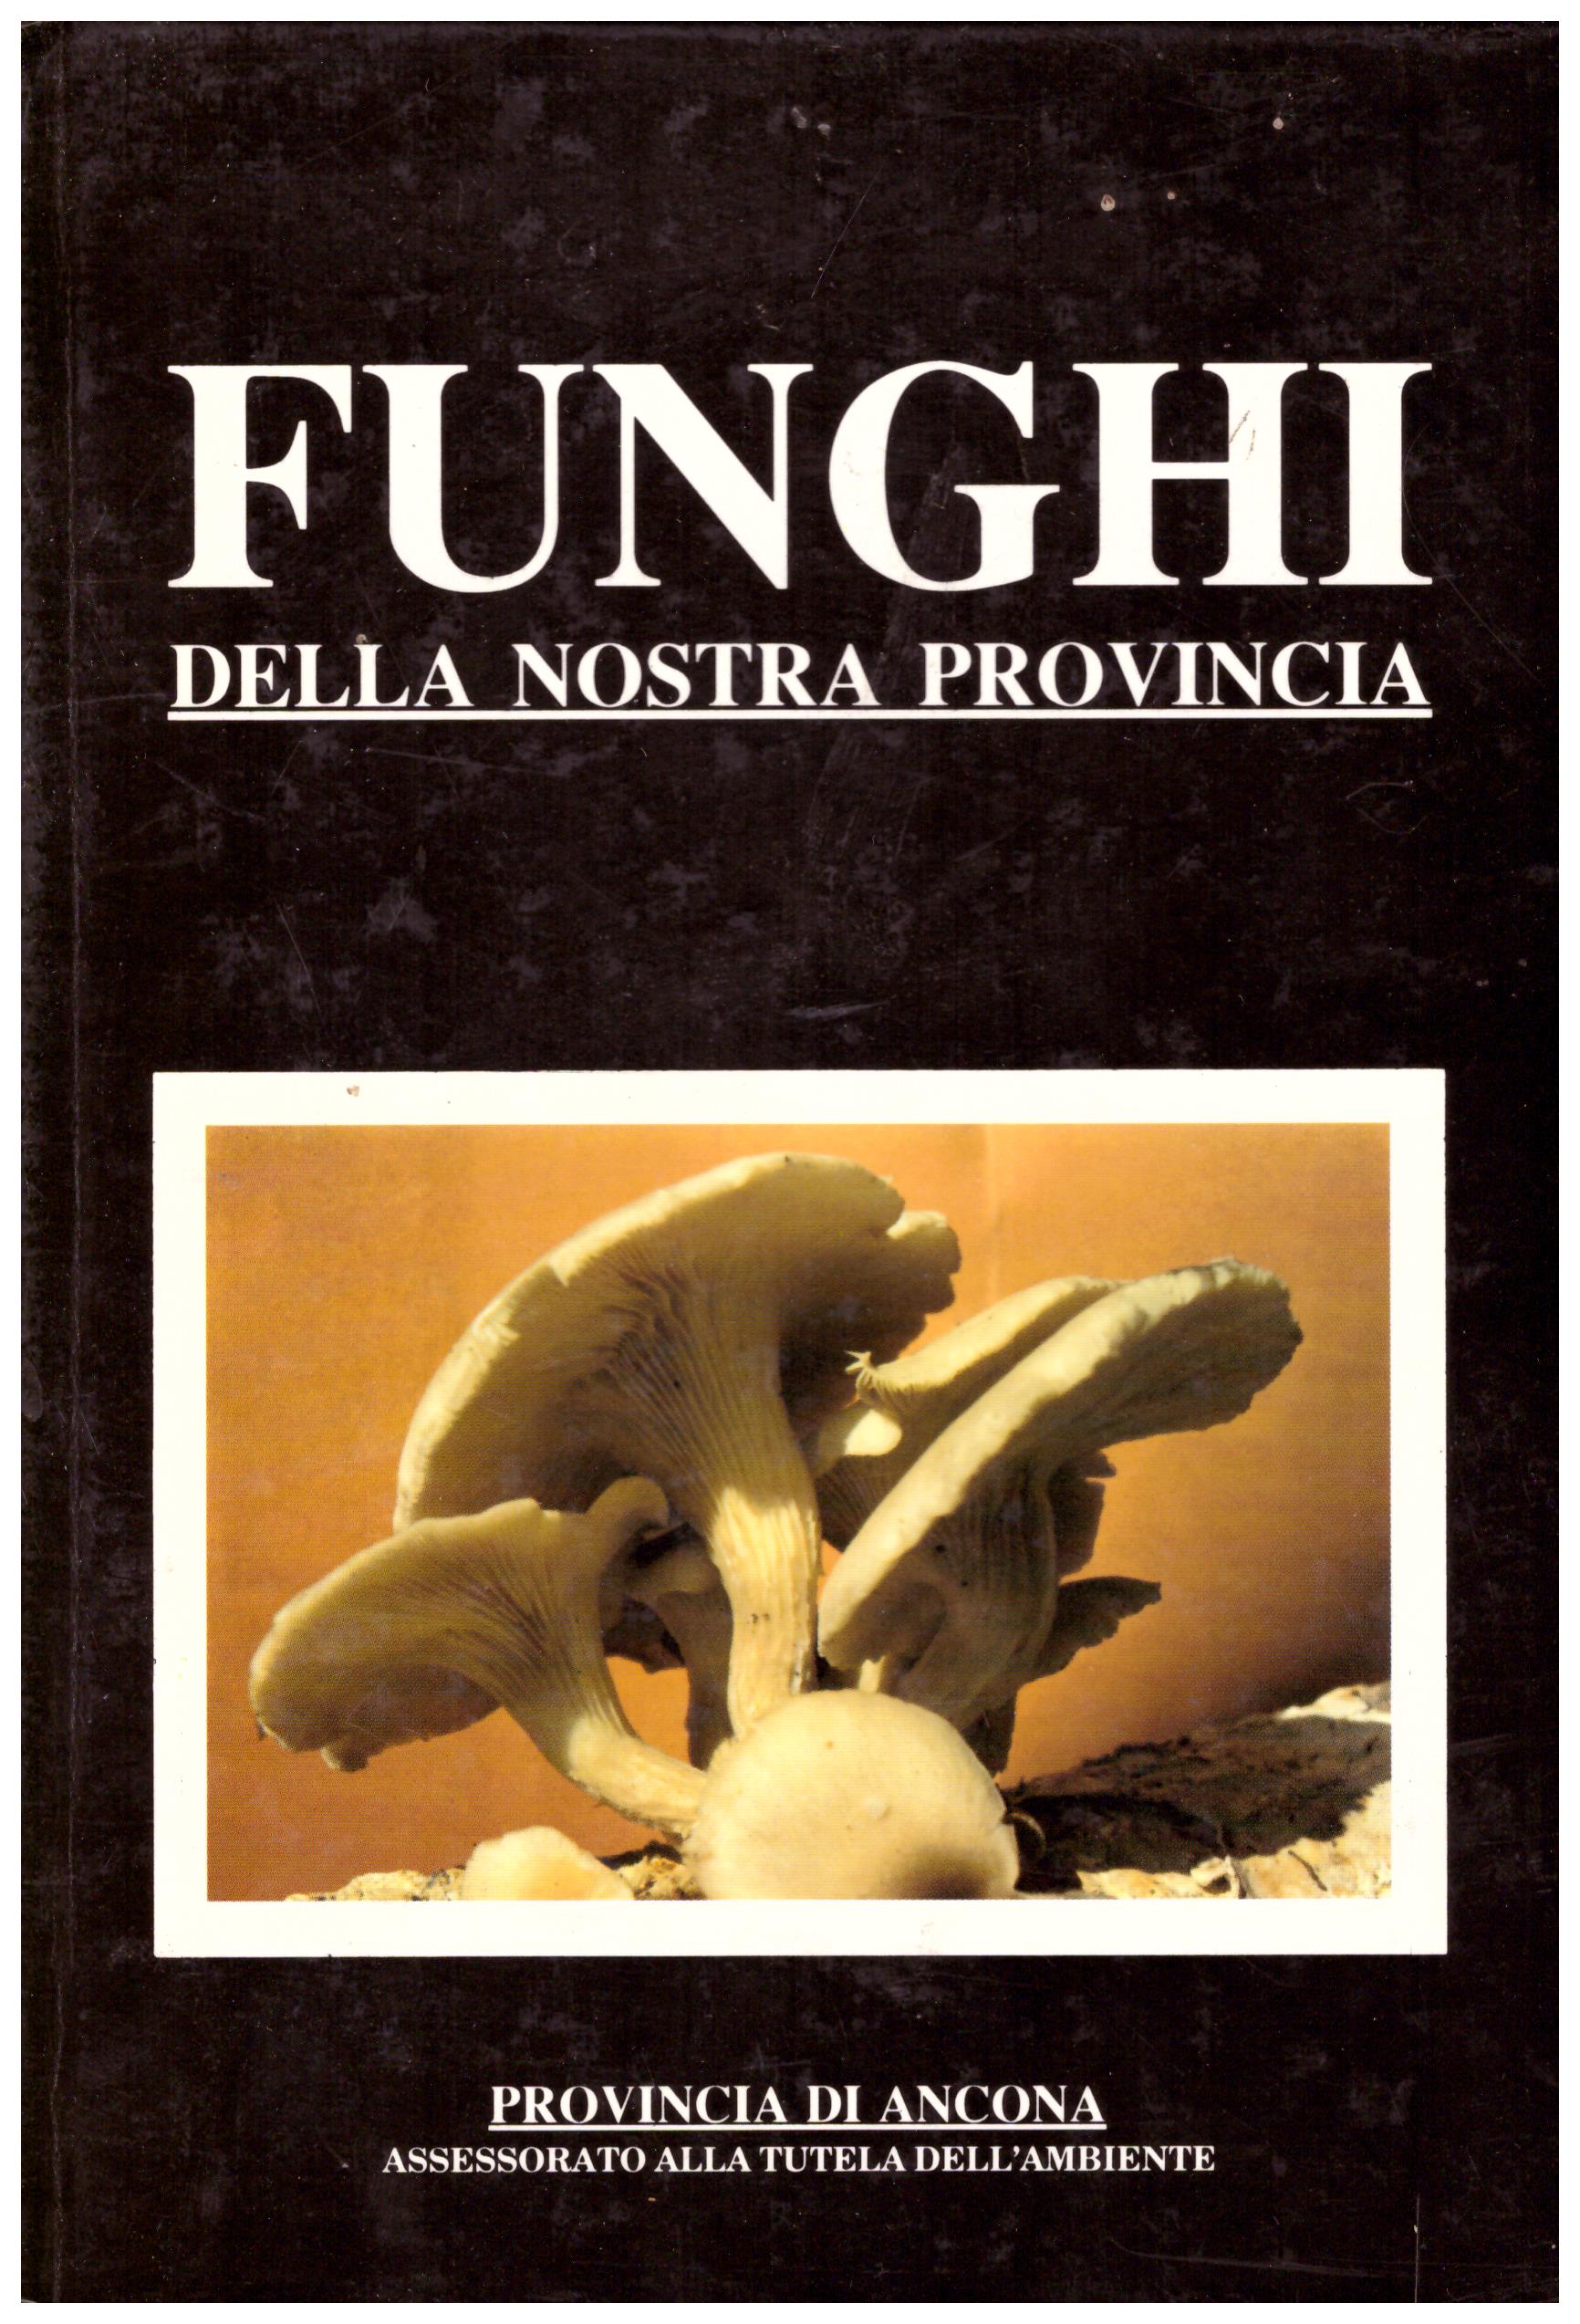 Funghi della nostra provincia